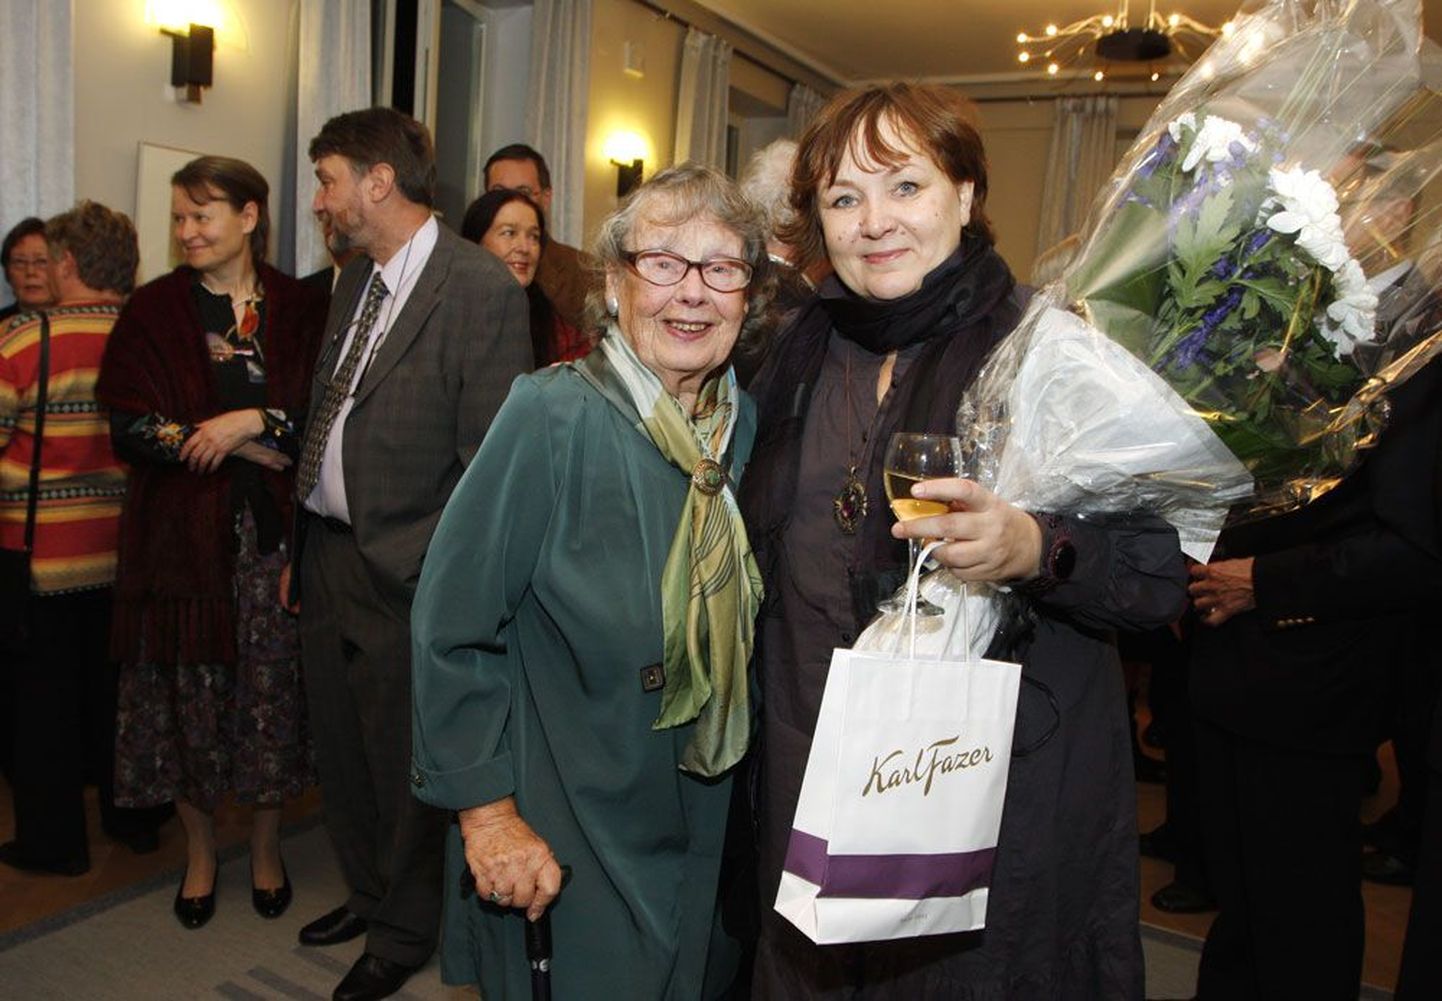 Filmis osalenud Ulla-Marita Rajakaltio ja Imbi Paju esilinastuse vastuvõtul Eesti saatkonnas Helsingis.